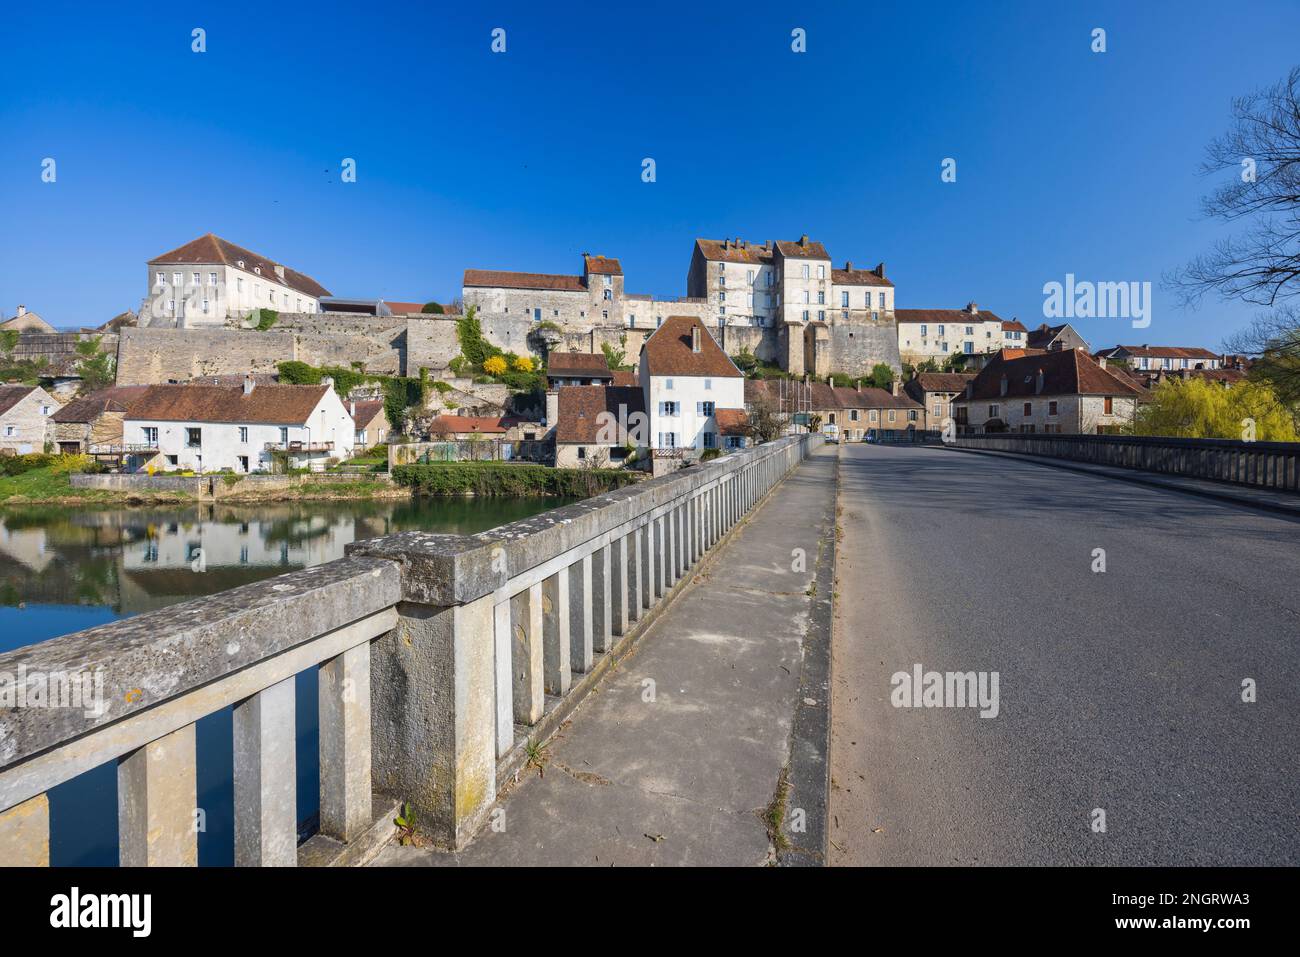 Petite ville typique de Pesmes avec la rivière L Orgon, haute-Saone, France Banque D'Images